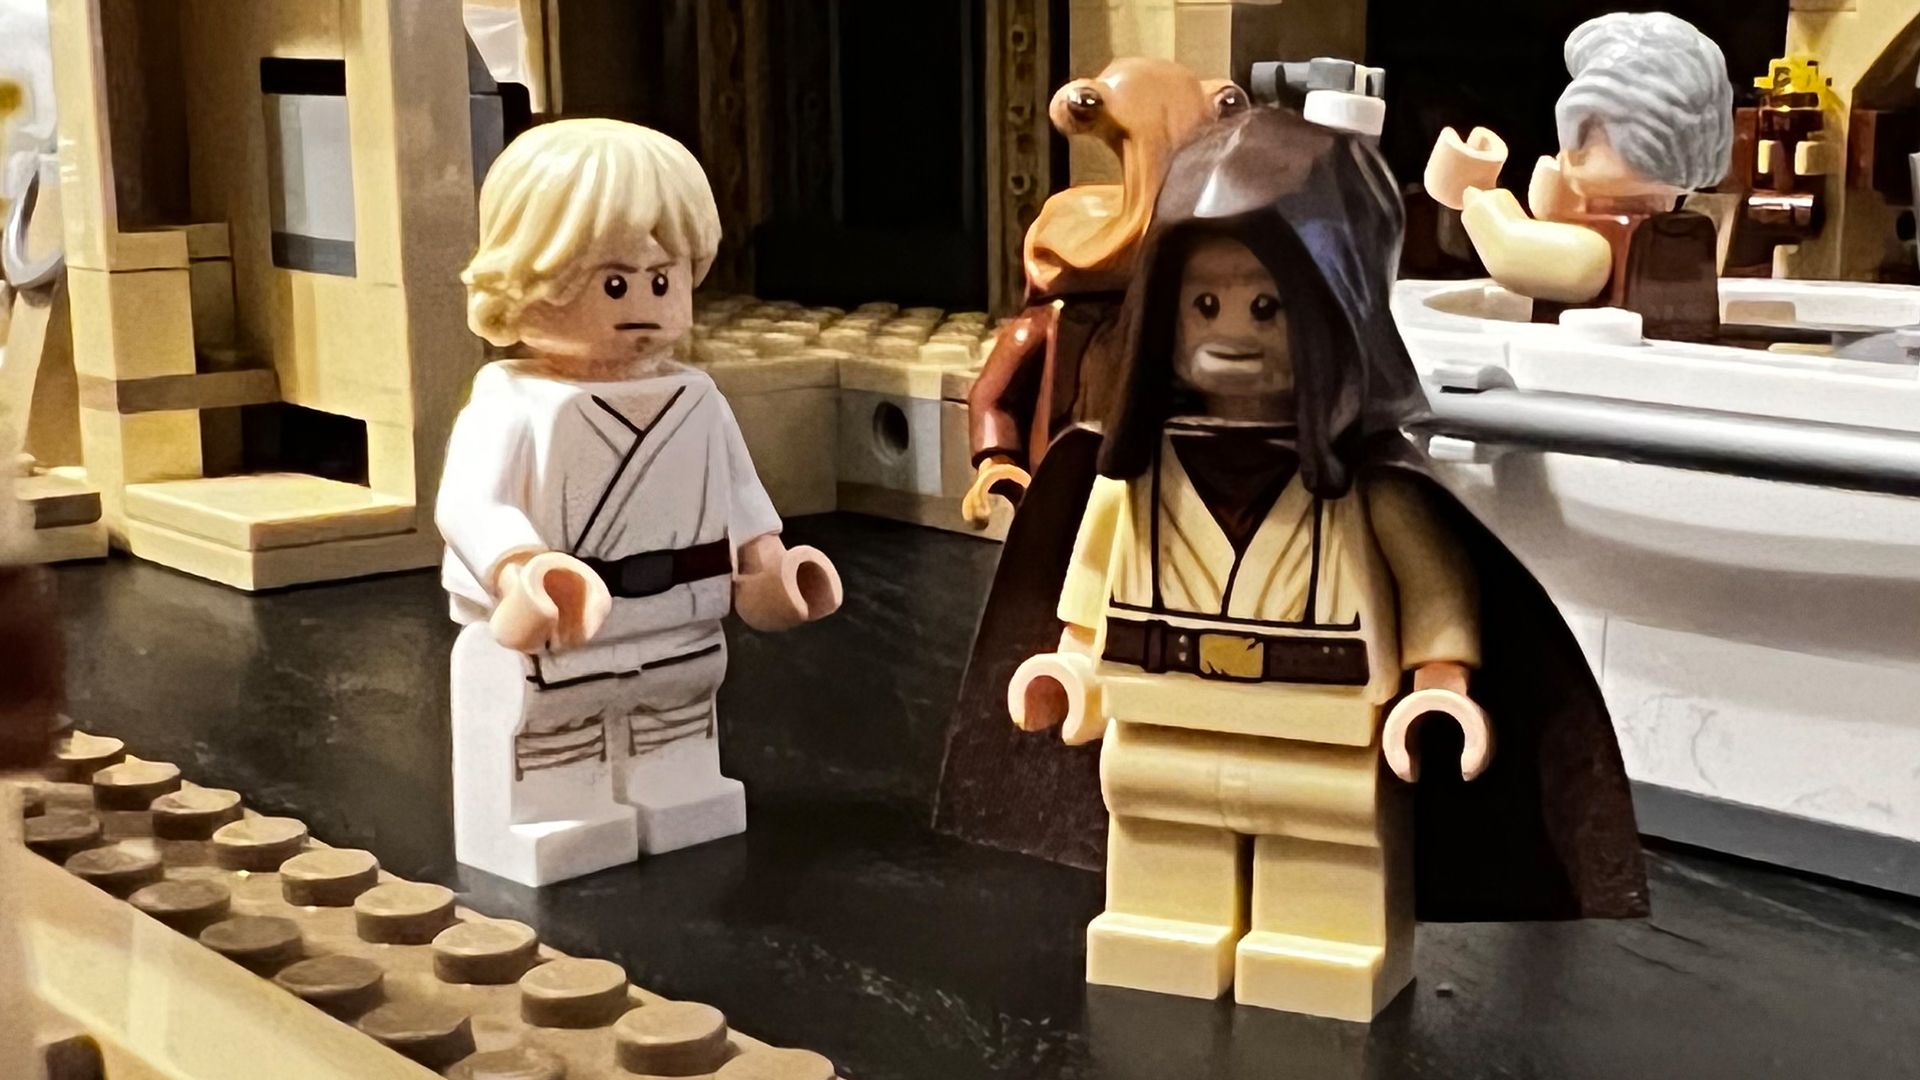 Lego Star Wars Mos Eisley Cantina_Luke Skywalker and Ben Kenobi minifigs_Jordan Middler